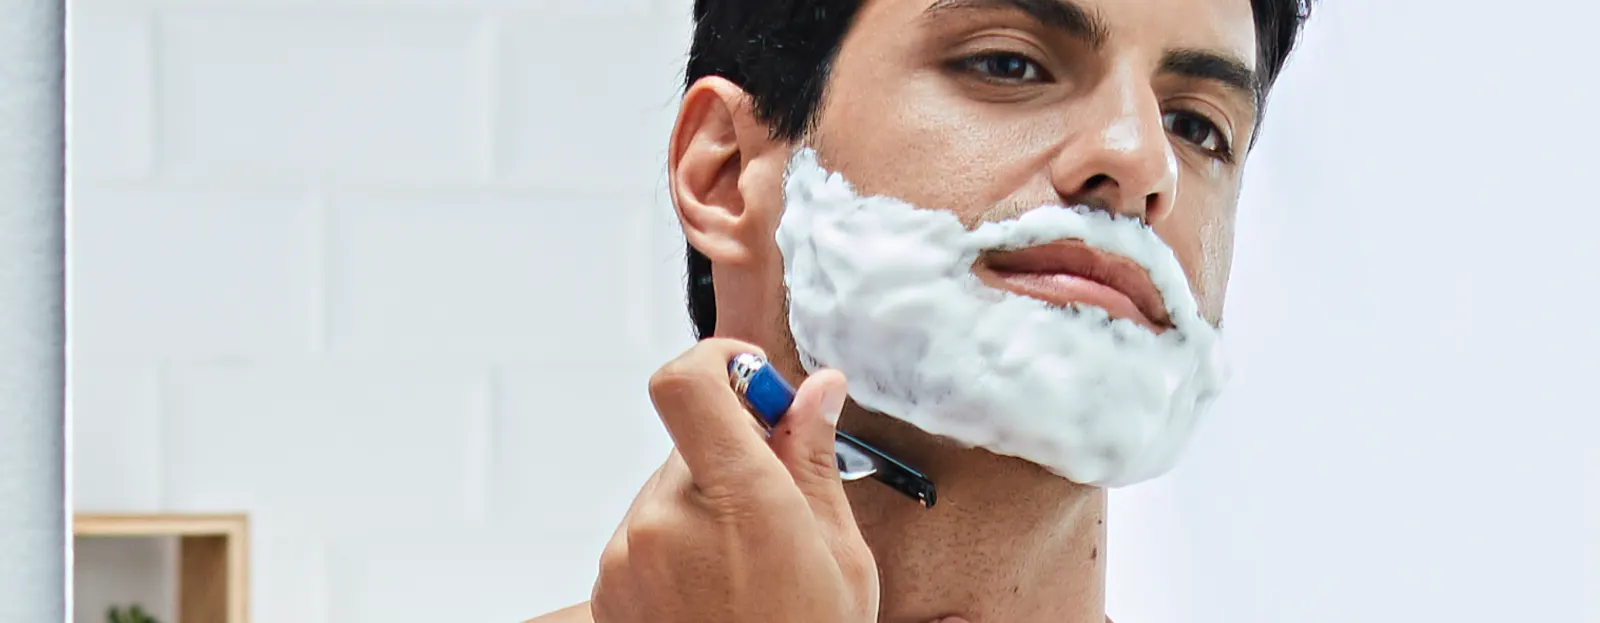 Consejos para afeitarse la cara contra la barba